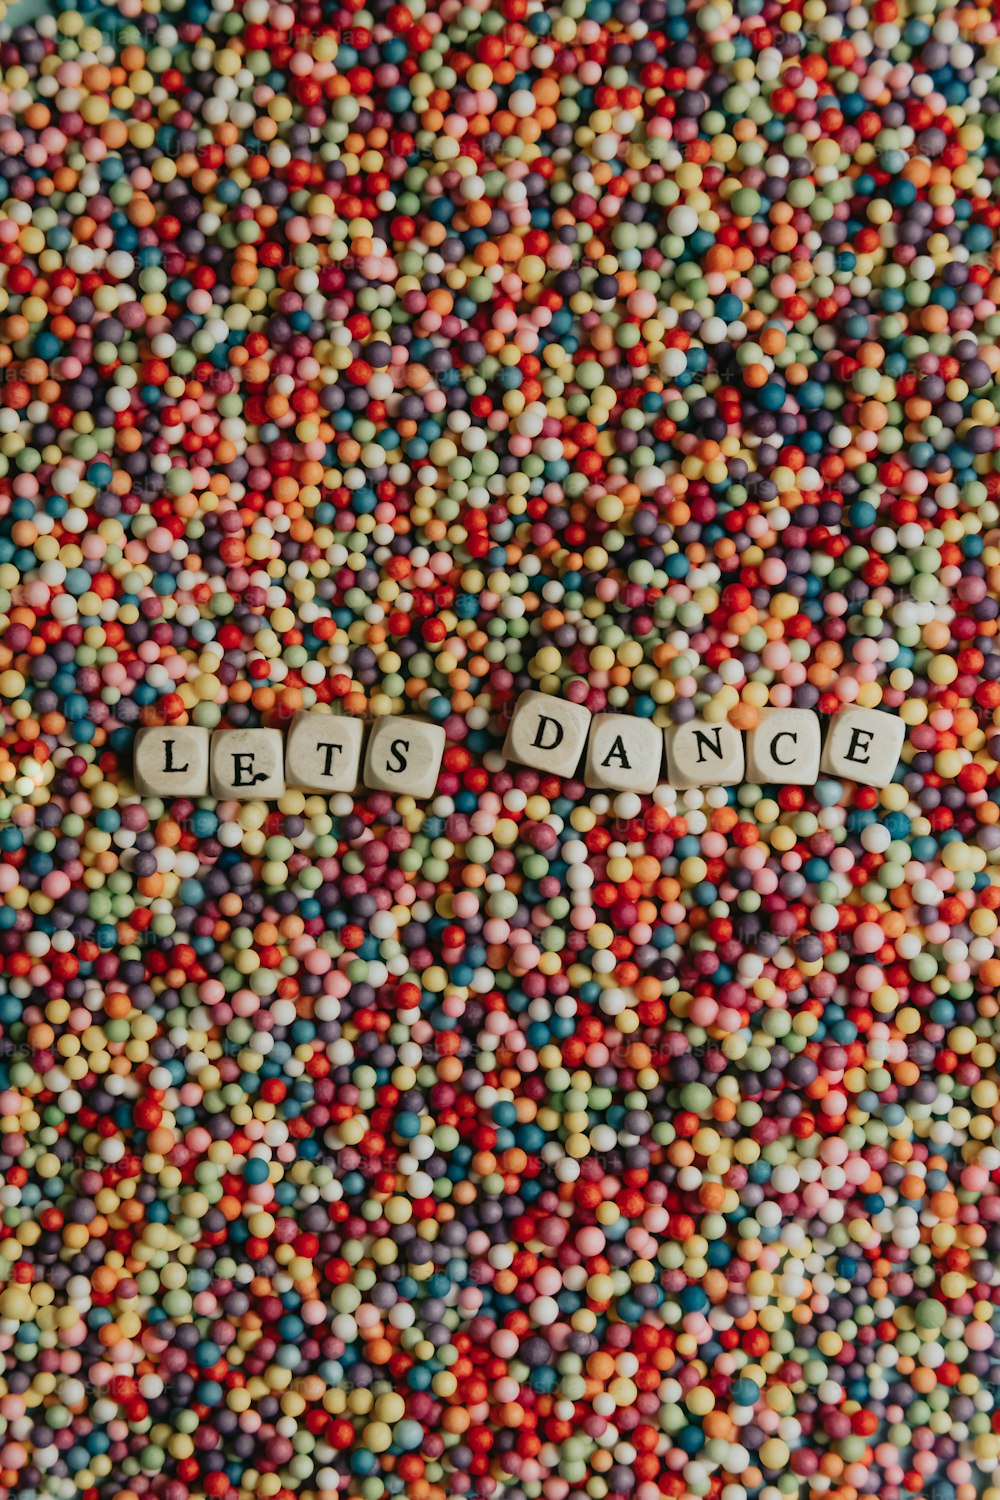 Un montón de dulces coloridos con la palabra clase danza escrita en ellos